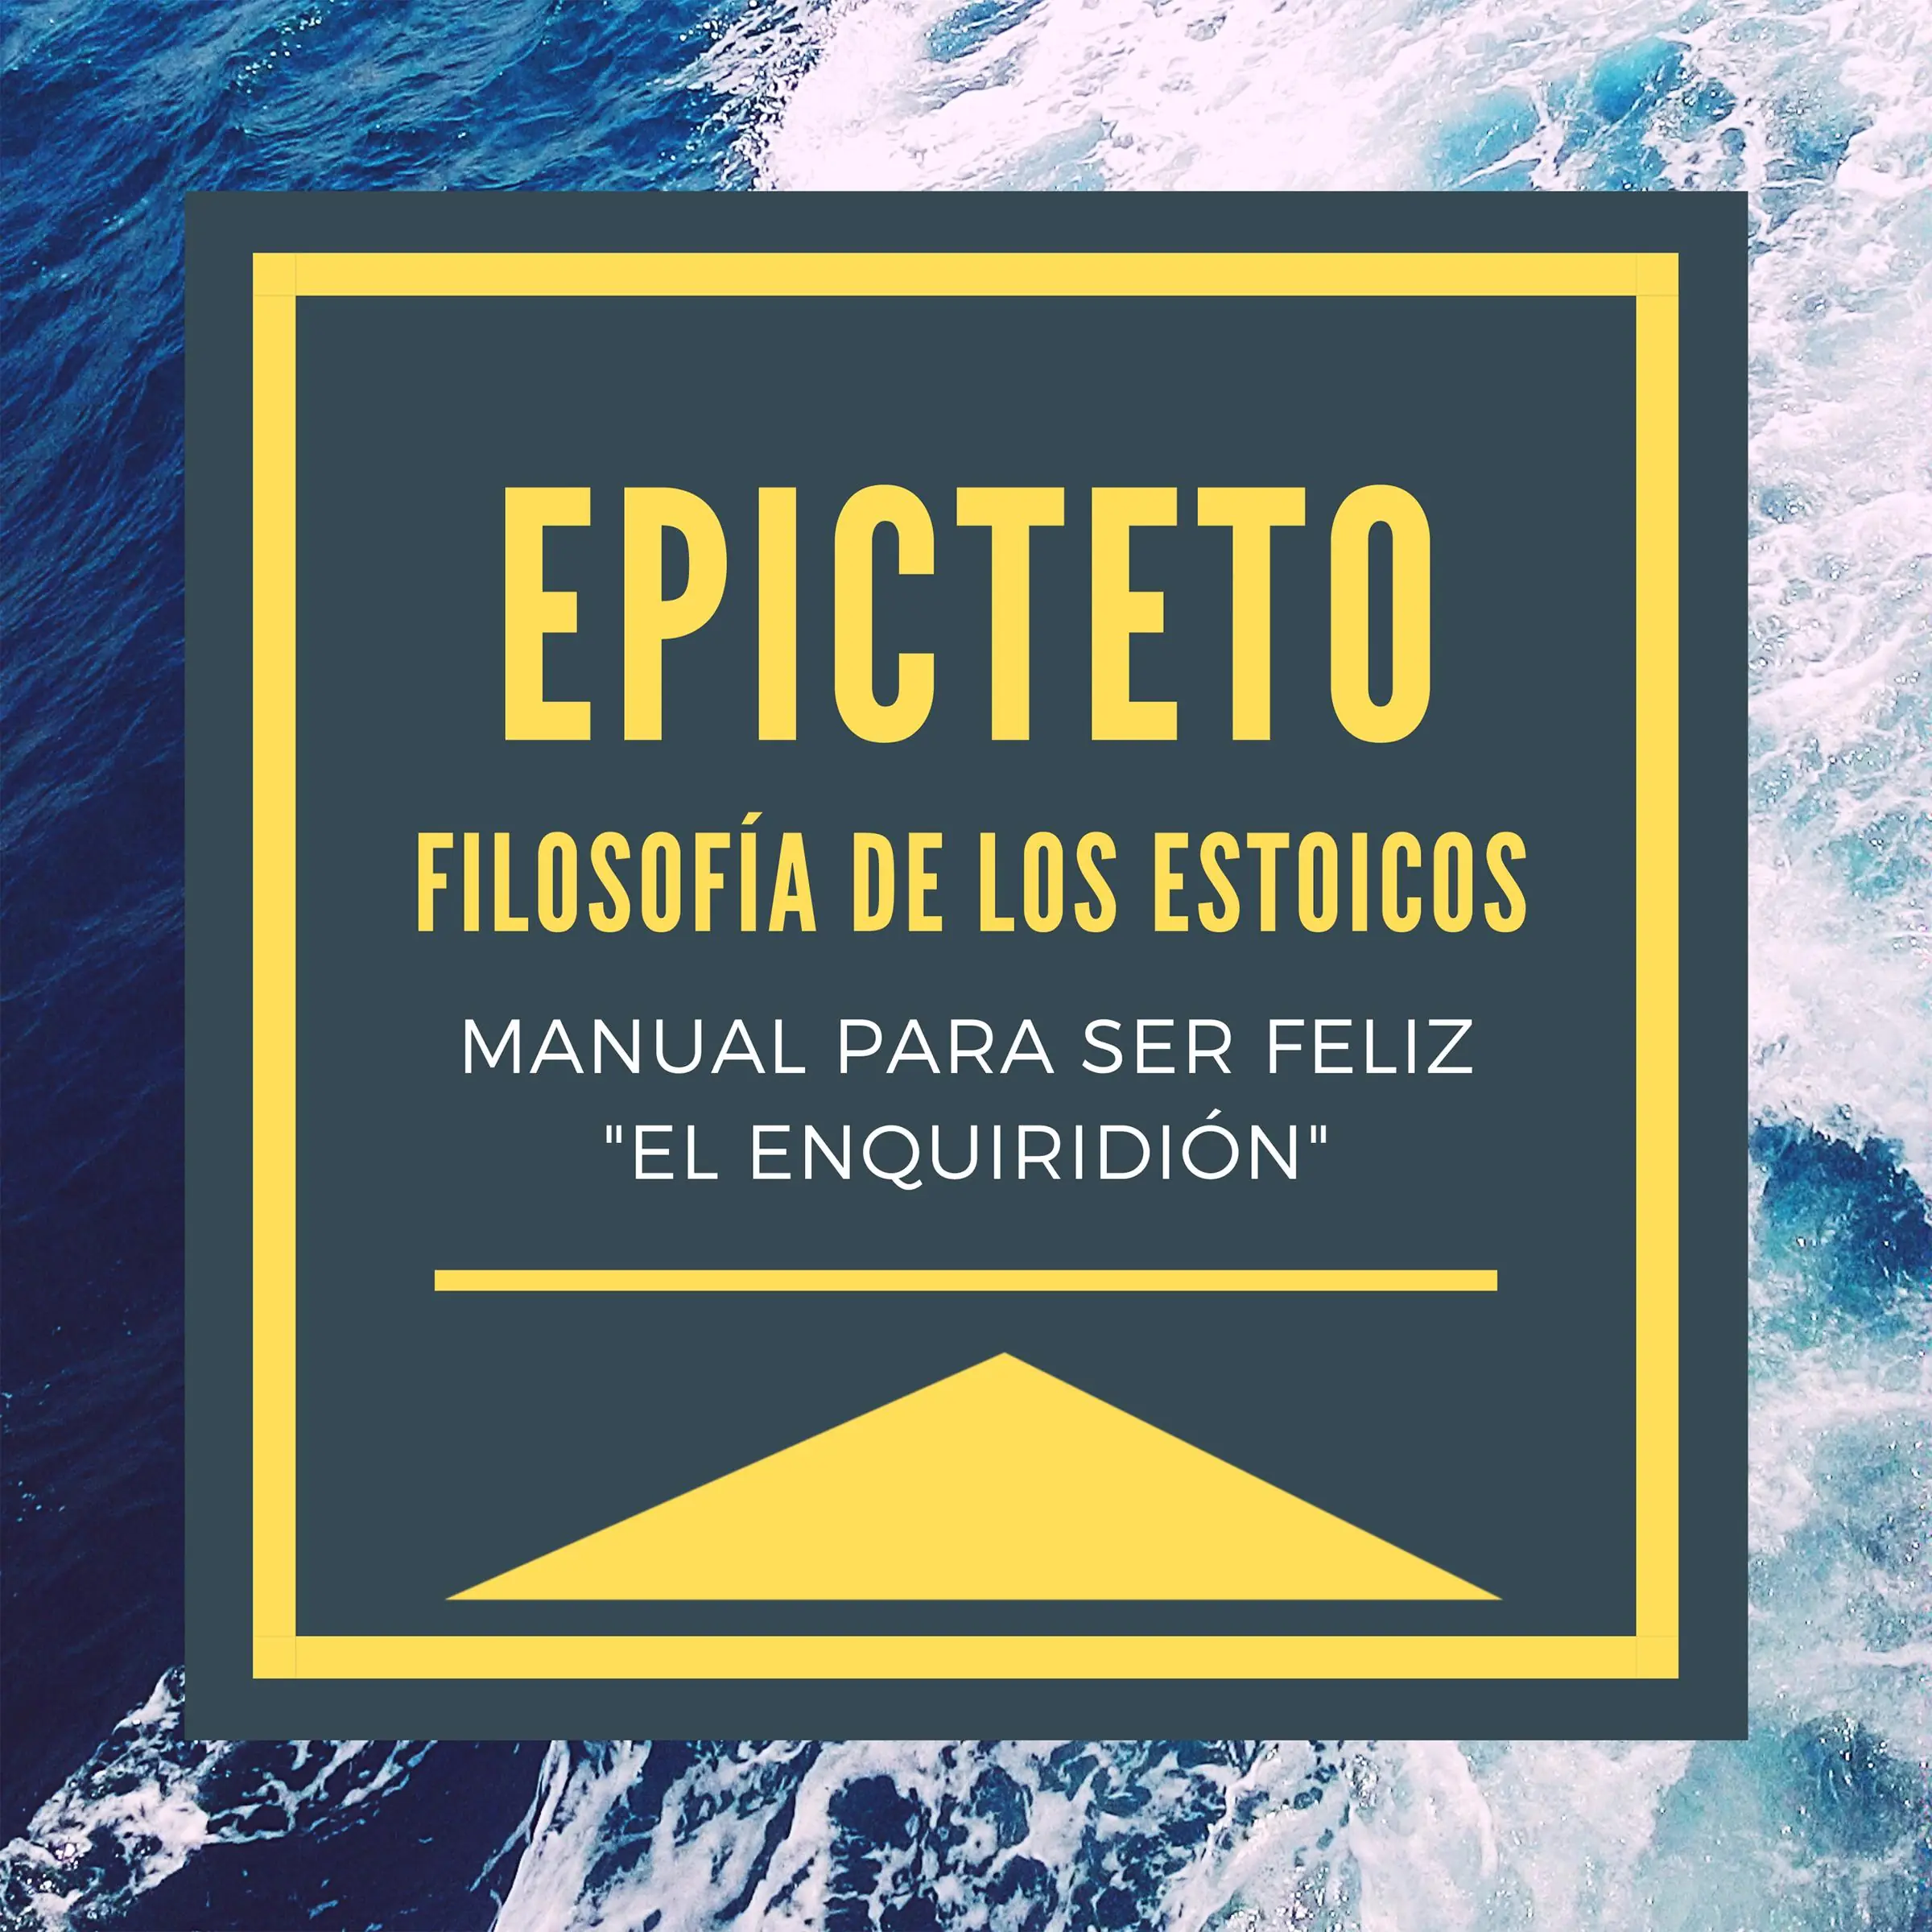 Epicteto - Filosofia de los Estoicos. Manual para ser Feliz "El Enquiridión" Audiobook by Epicteto